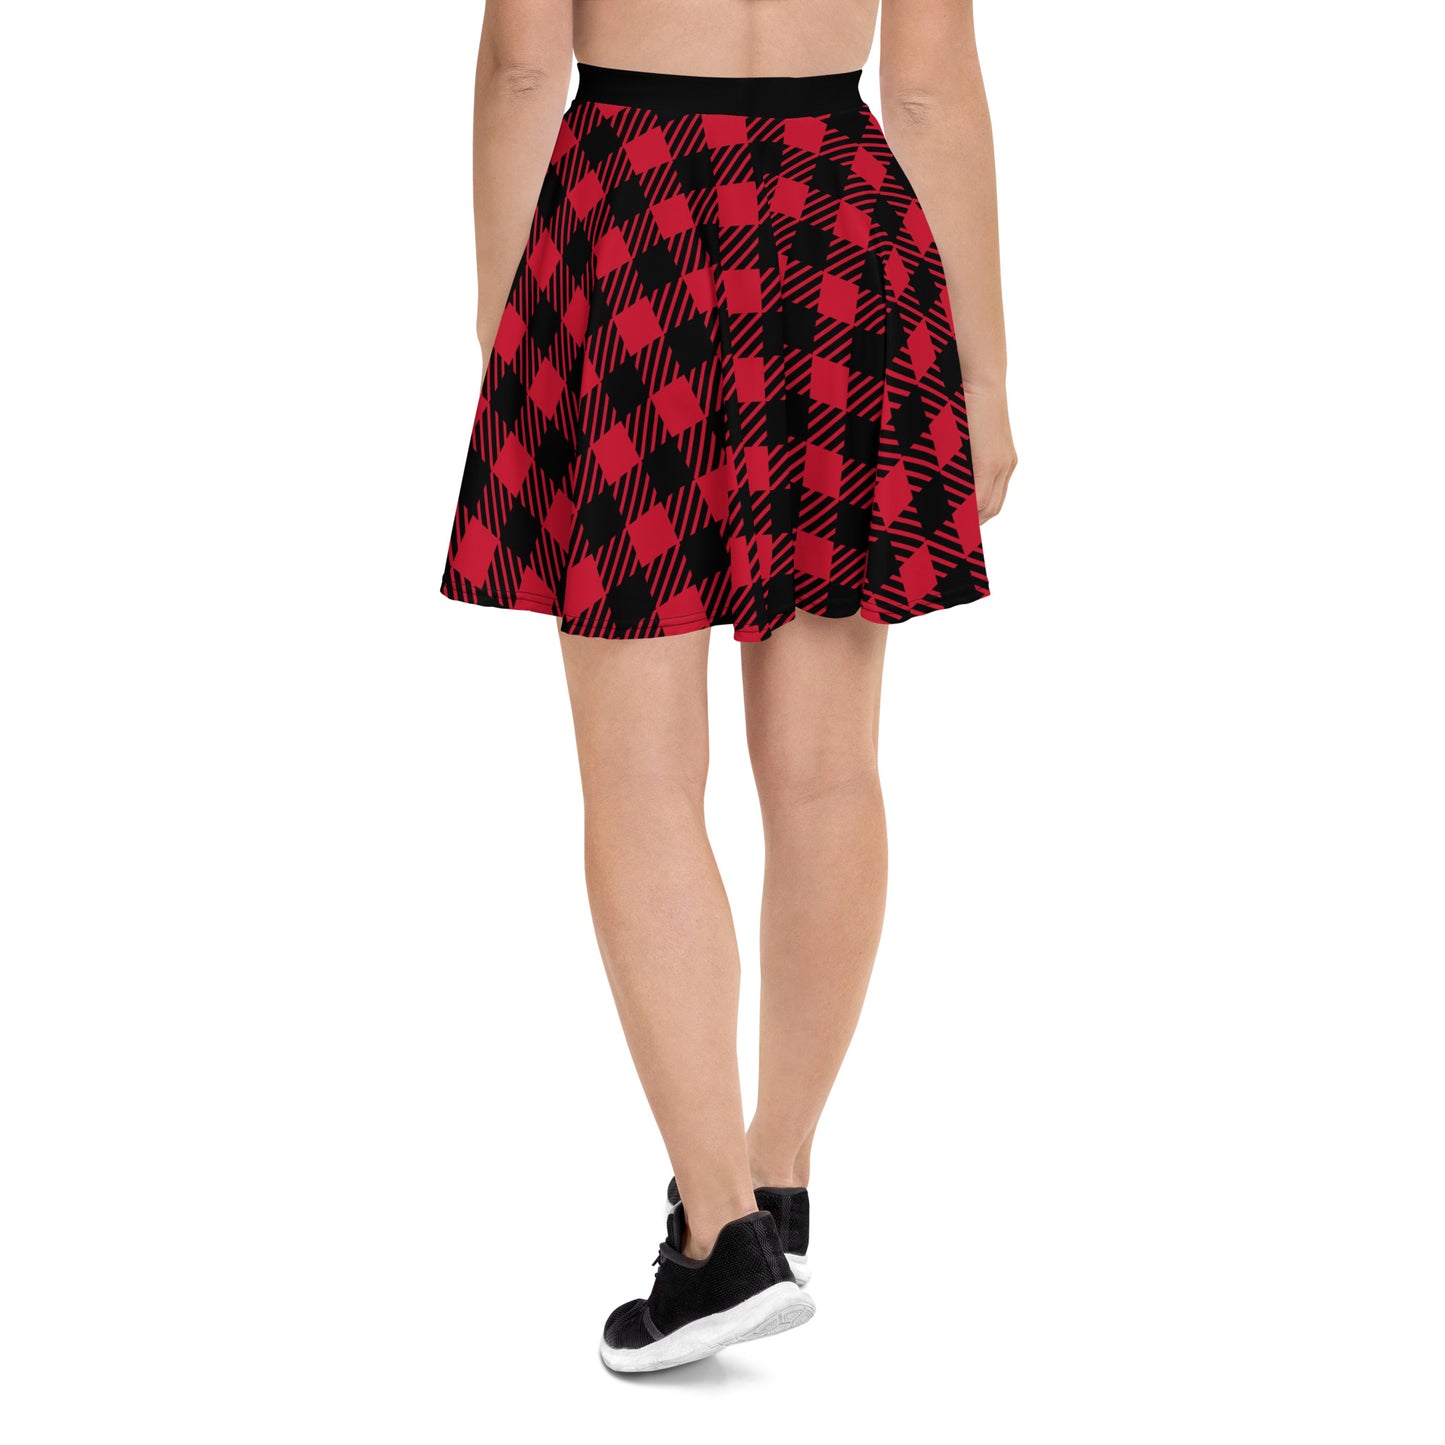 Skater Skirt Red/Black